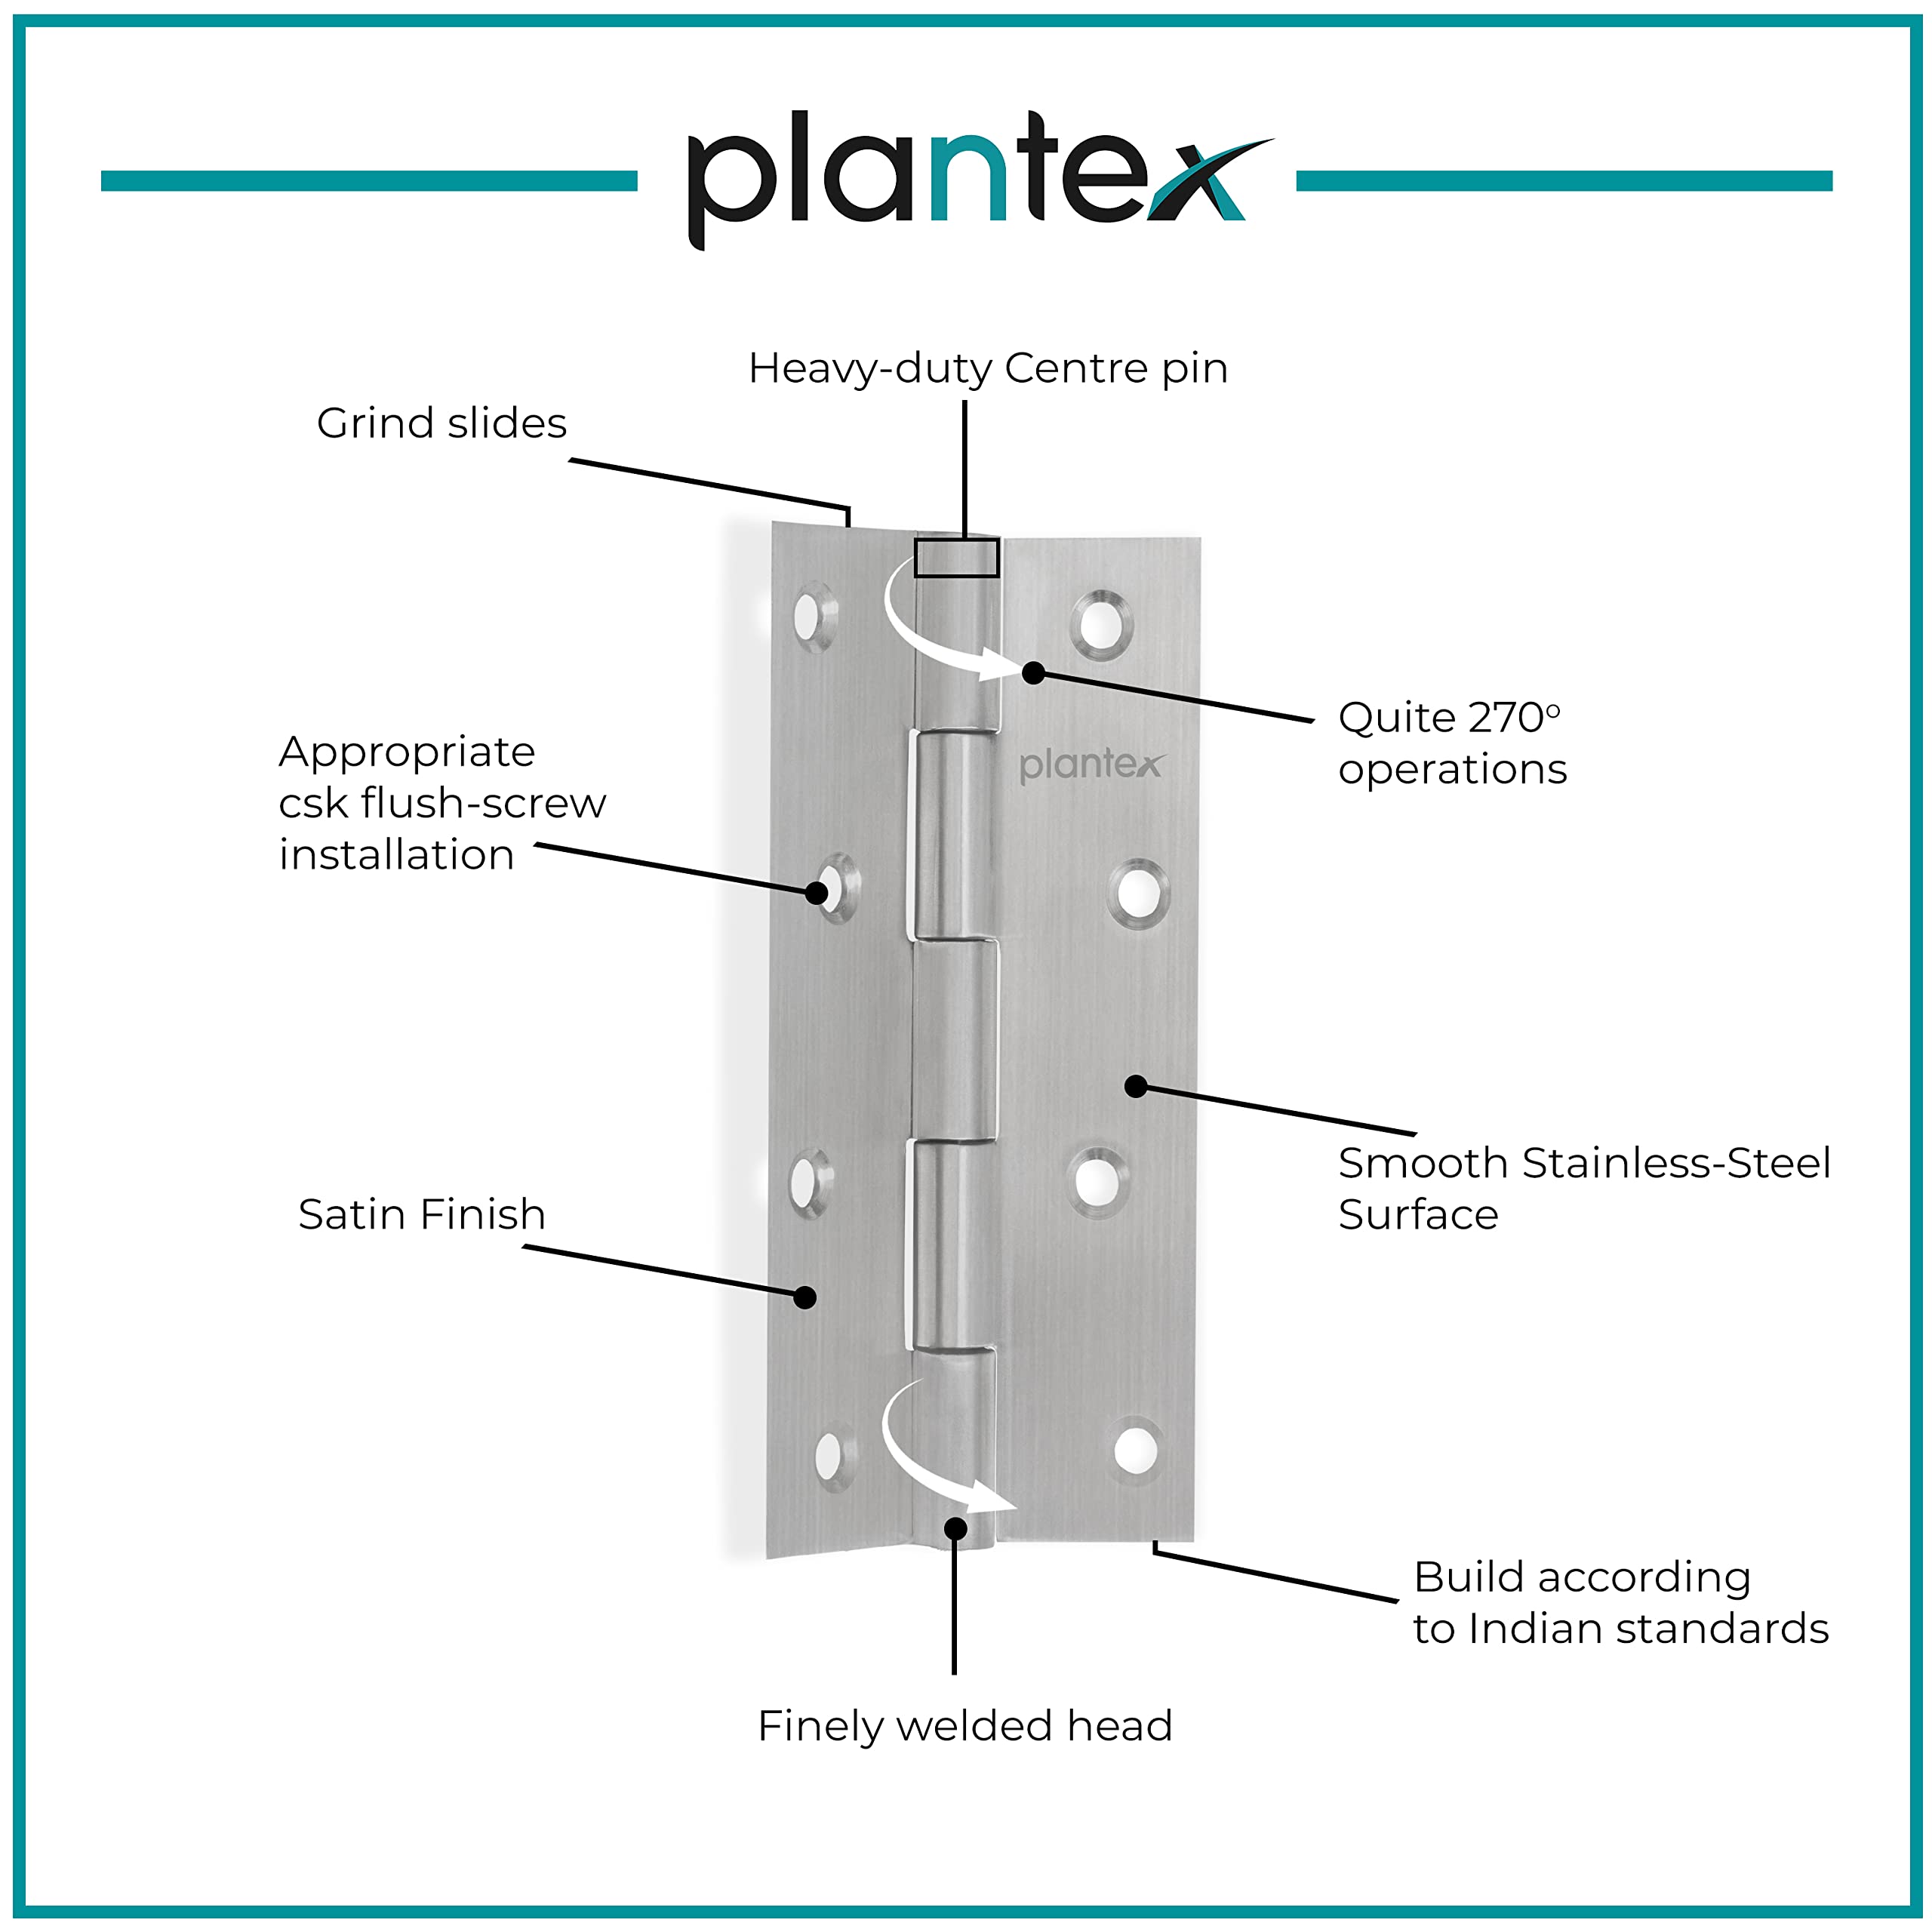 Plantex Heavy Duty Stainless Steel Door Butt Hinges 5 inch x 12 Gauge/2.5 mm Thickness Home/Office/Hotel for Main Door/Bedroom/Kitchen/Bathroom - Pack of 48 (Satin Matt)